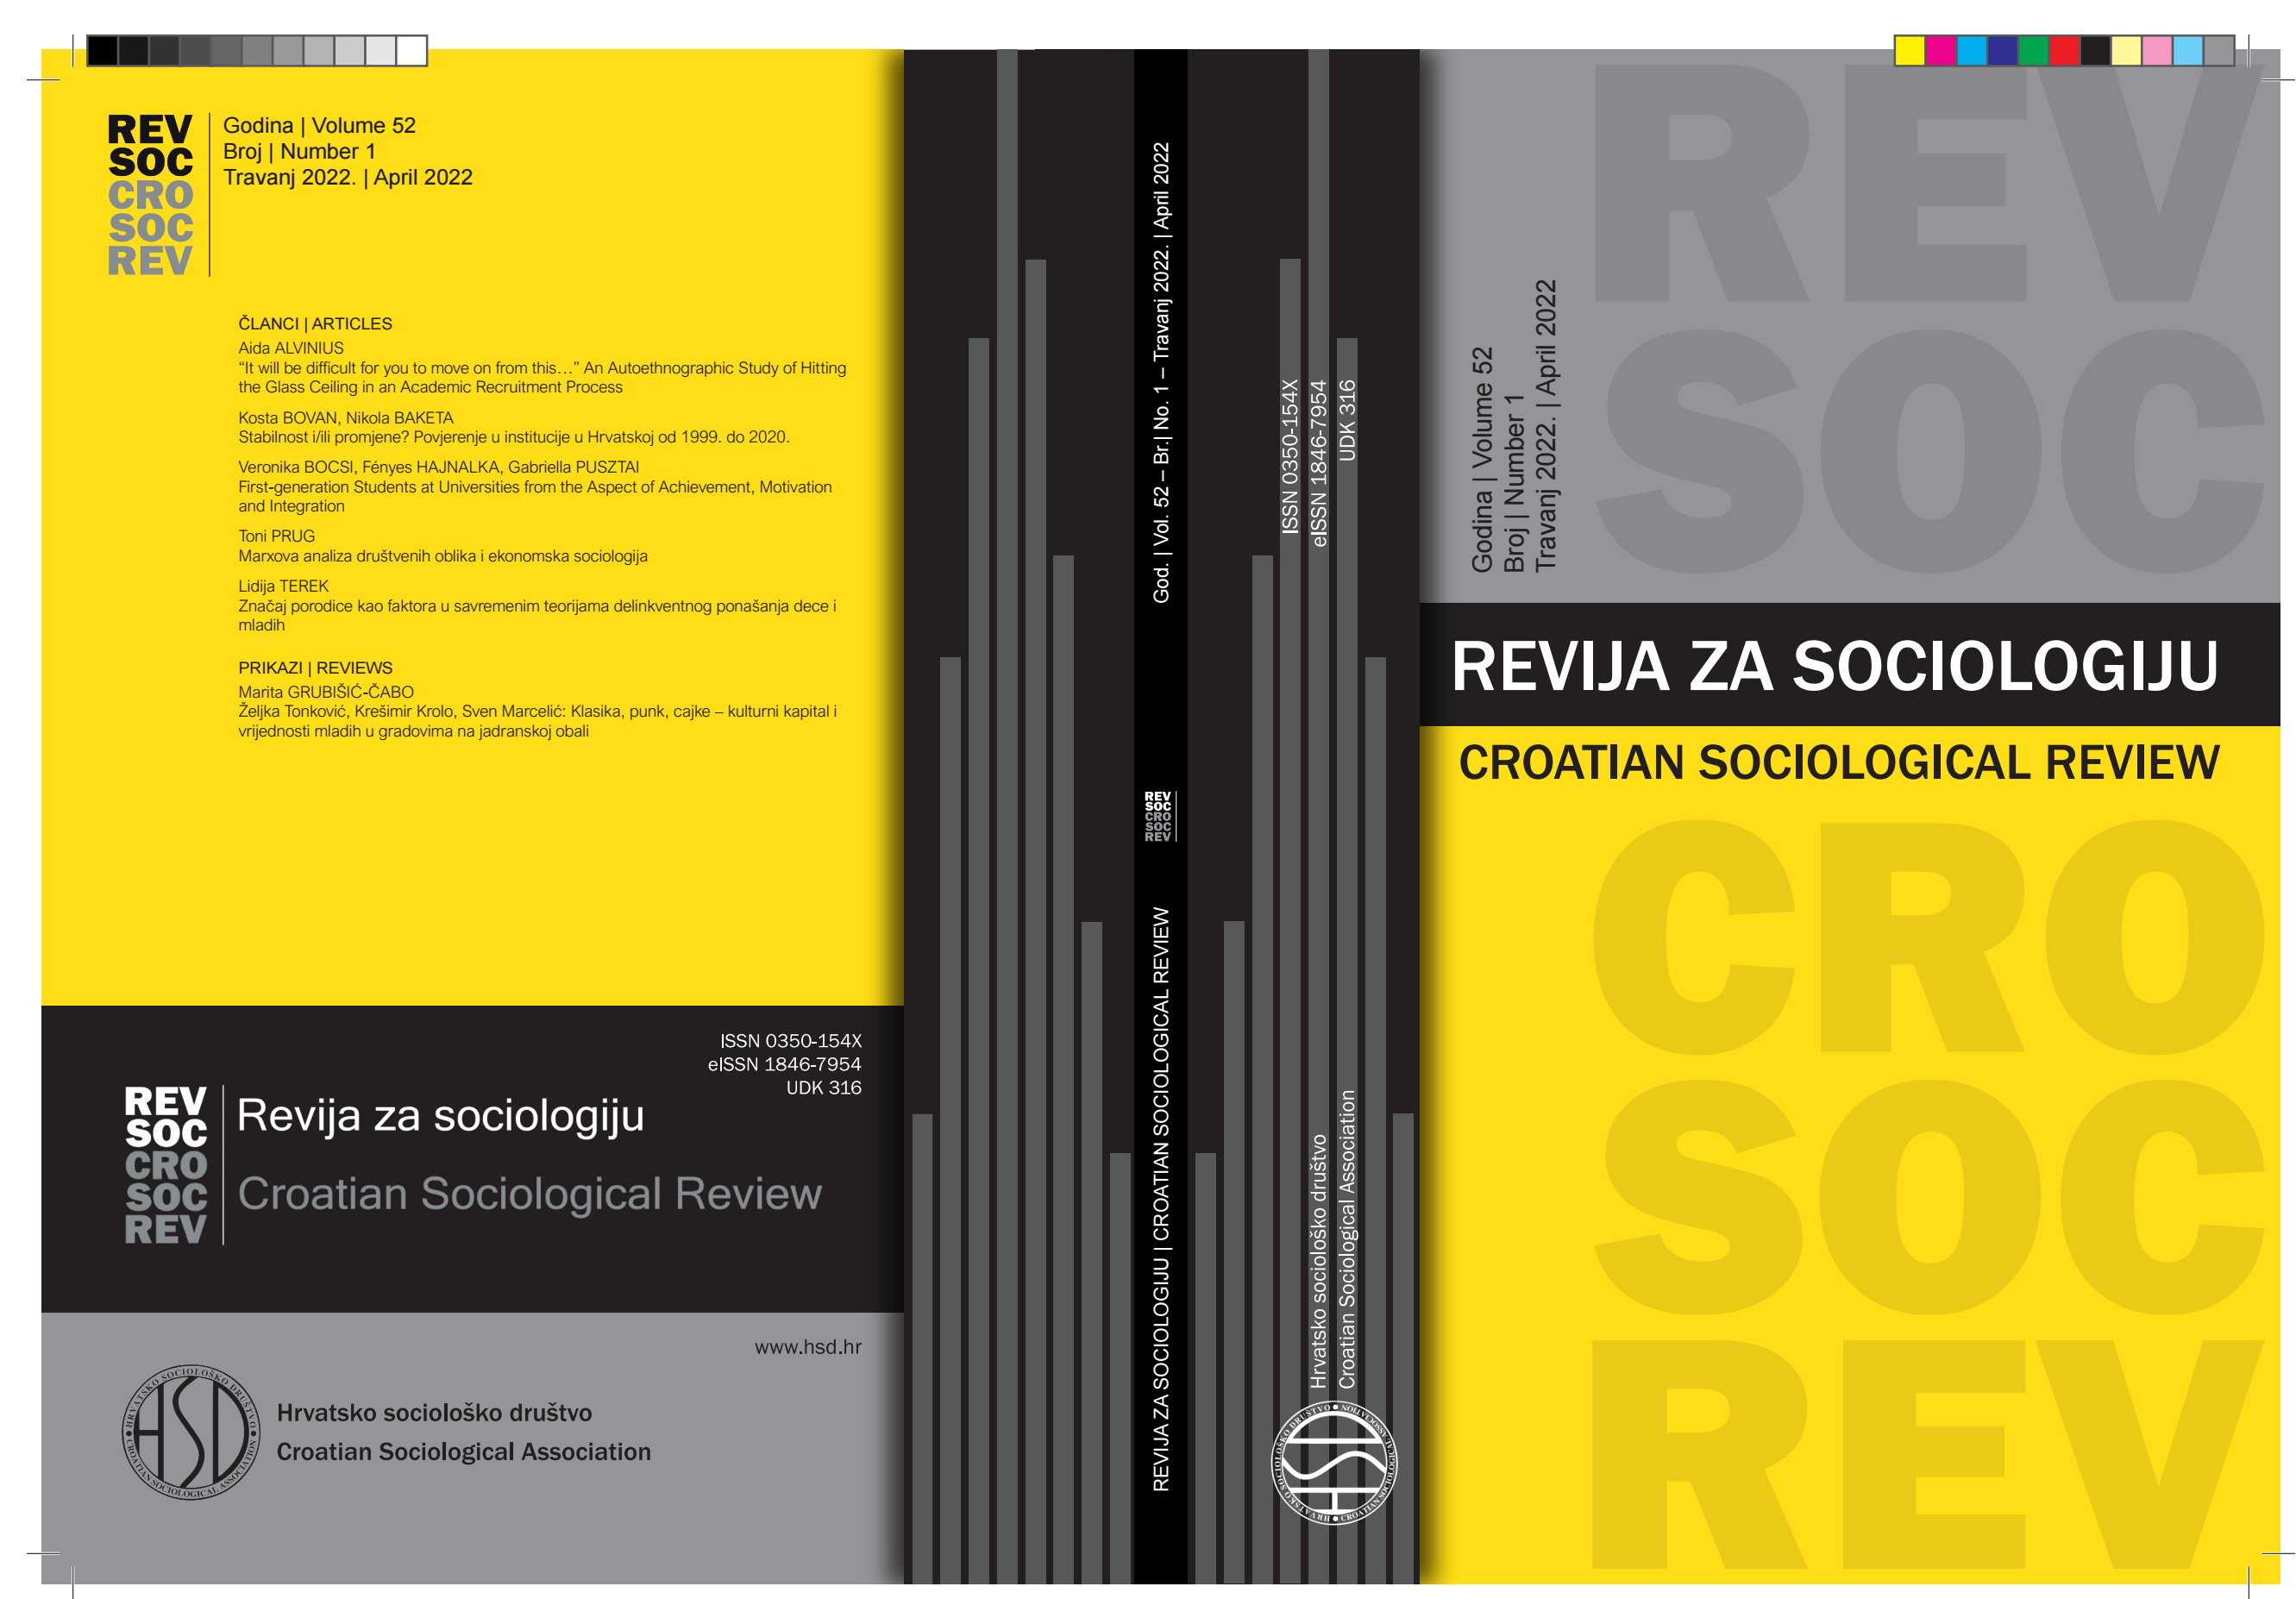 Marxova analiza društvenih oblika i ekonomska sociologija